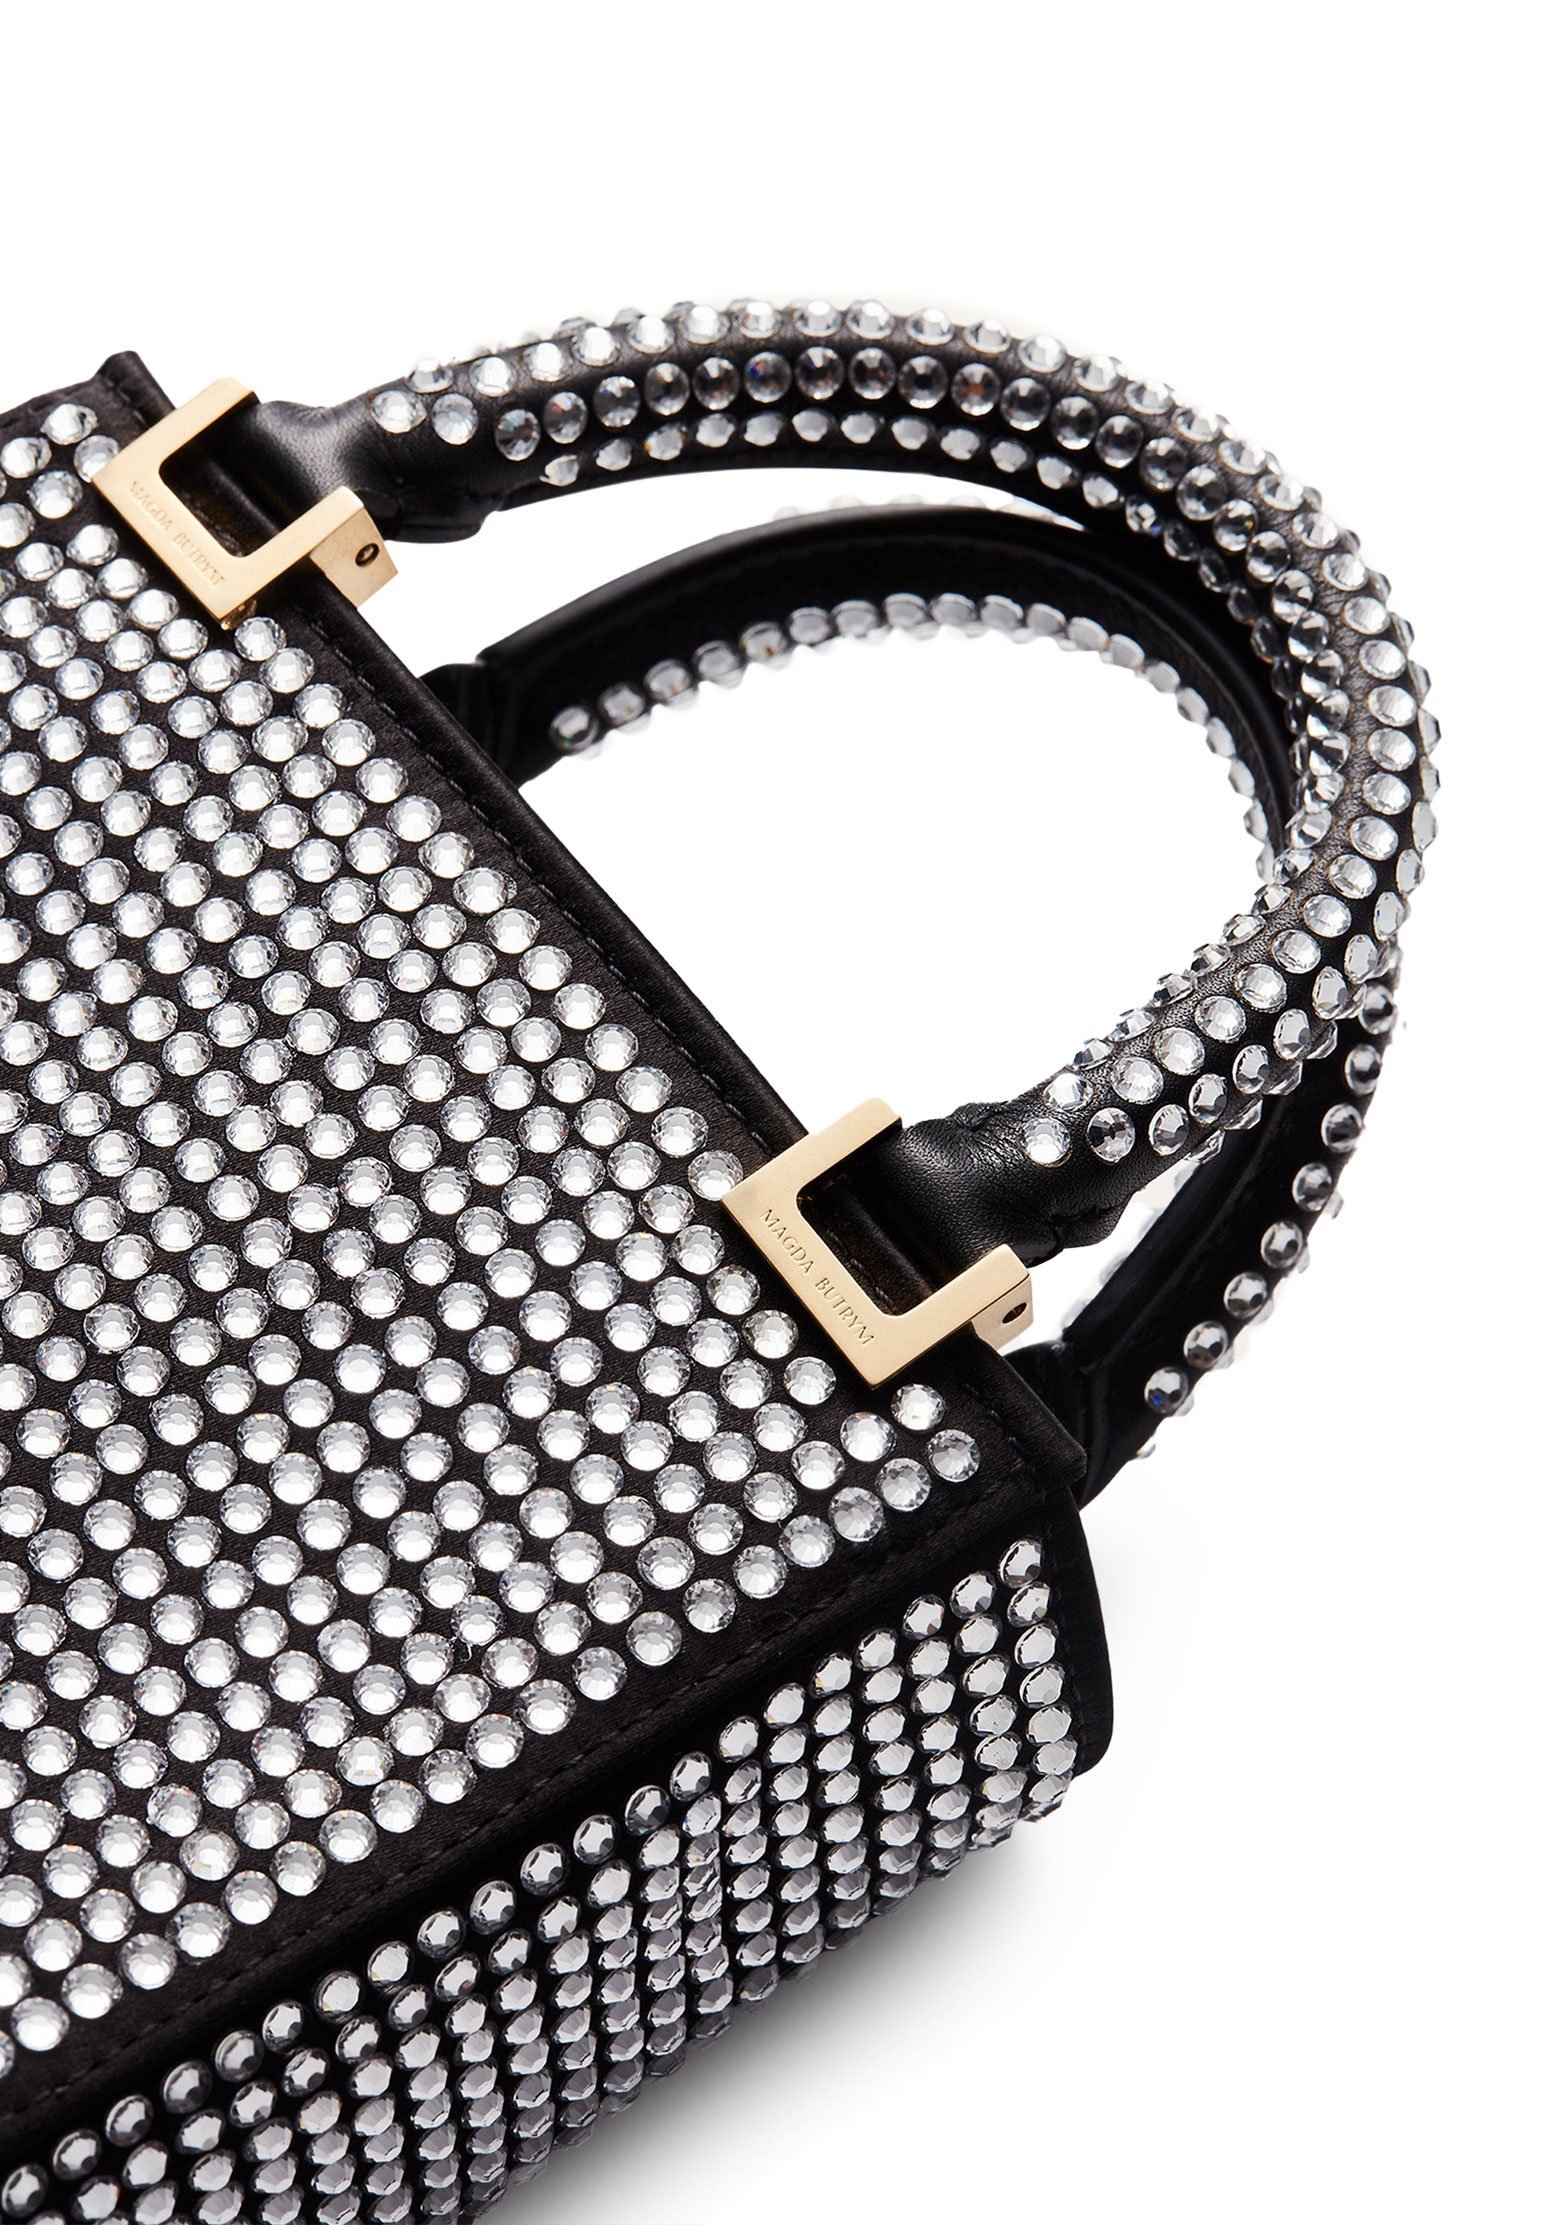 Bag MAGDA BUTRYM Color: black (Code: 3593) in online store Allure